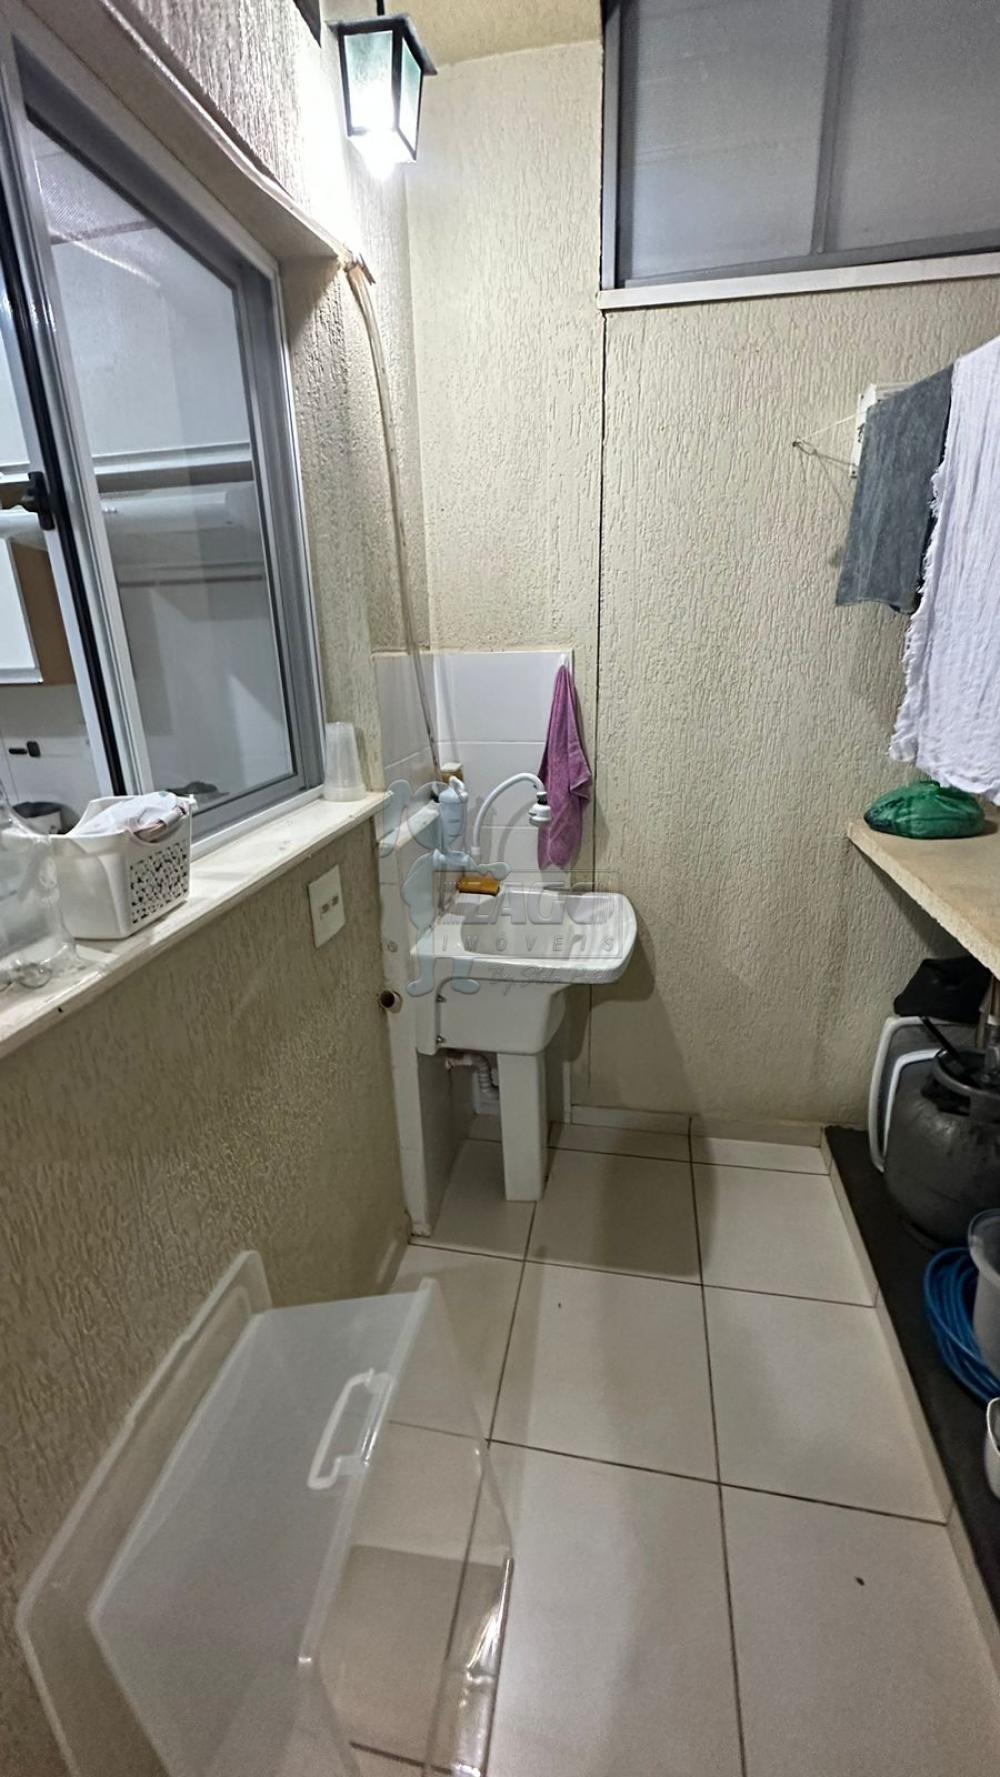 Comprar Casa condomínio / Padrão em Sertãozinho R$ 290.000,00 - Foto 4